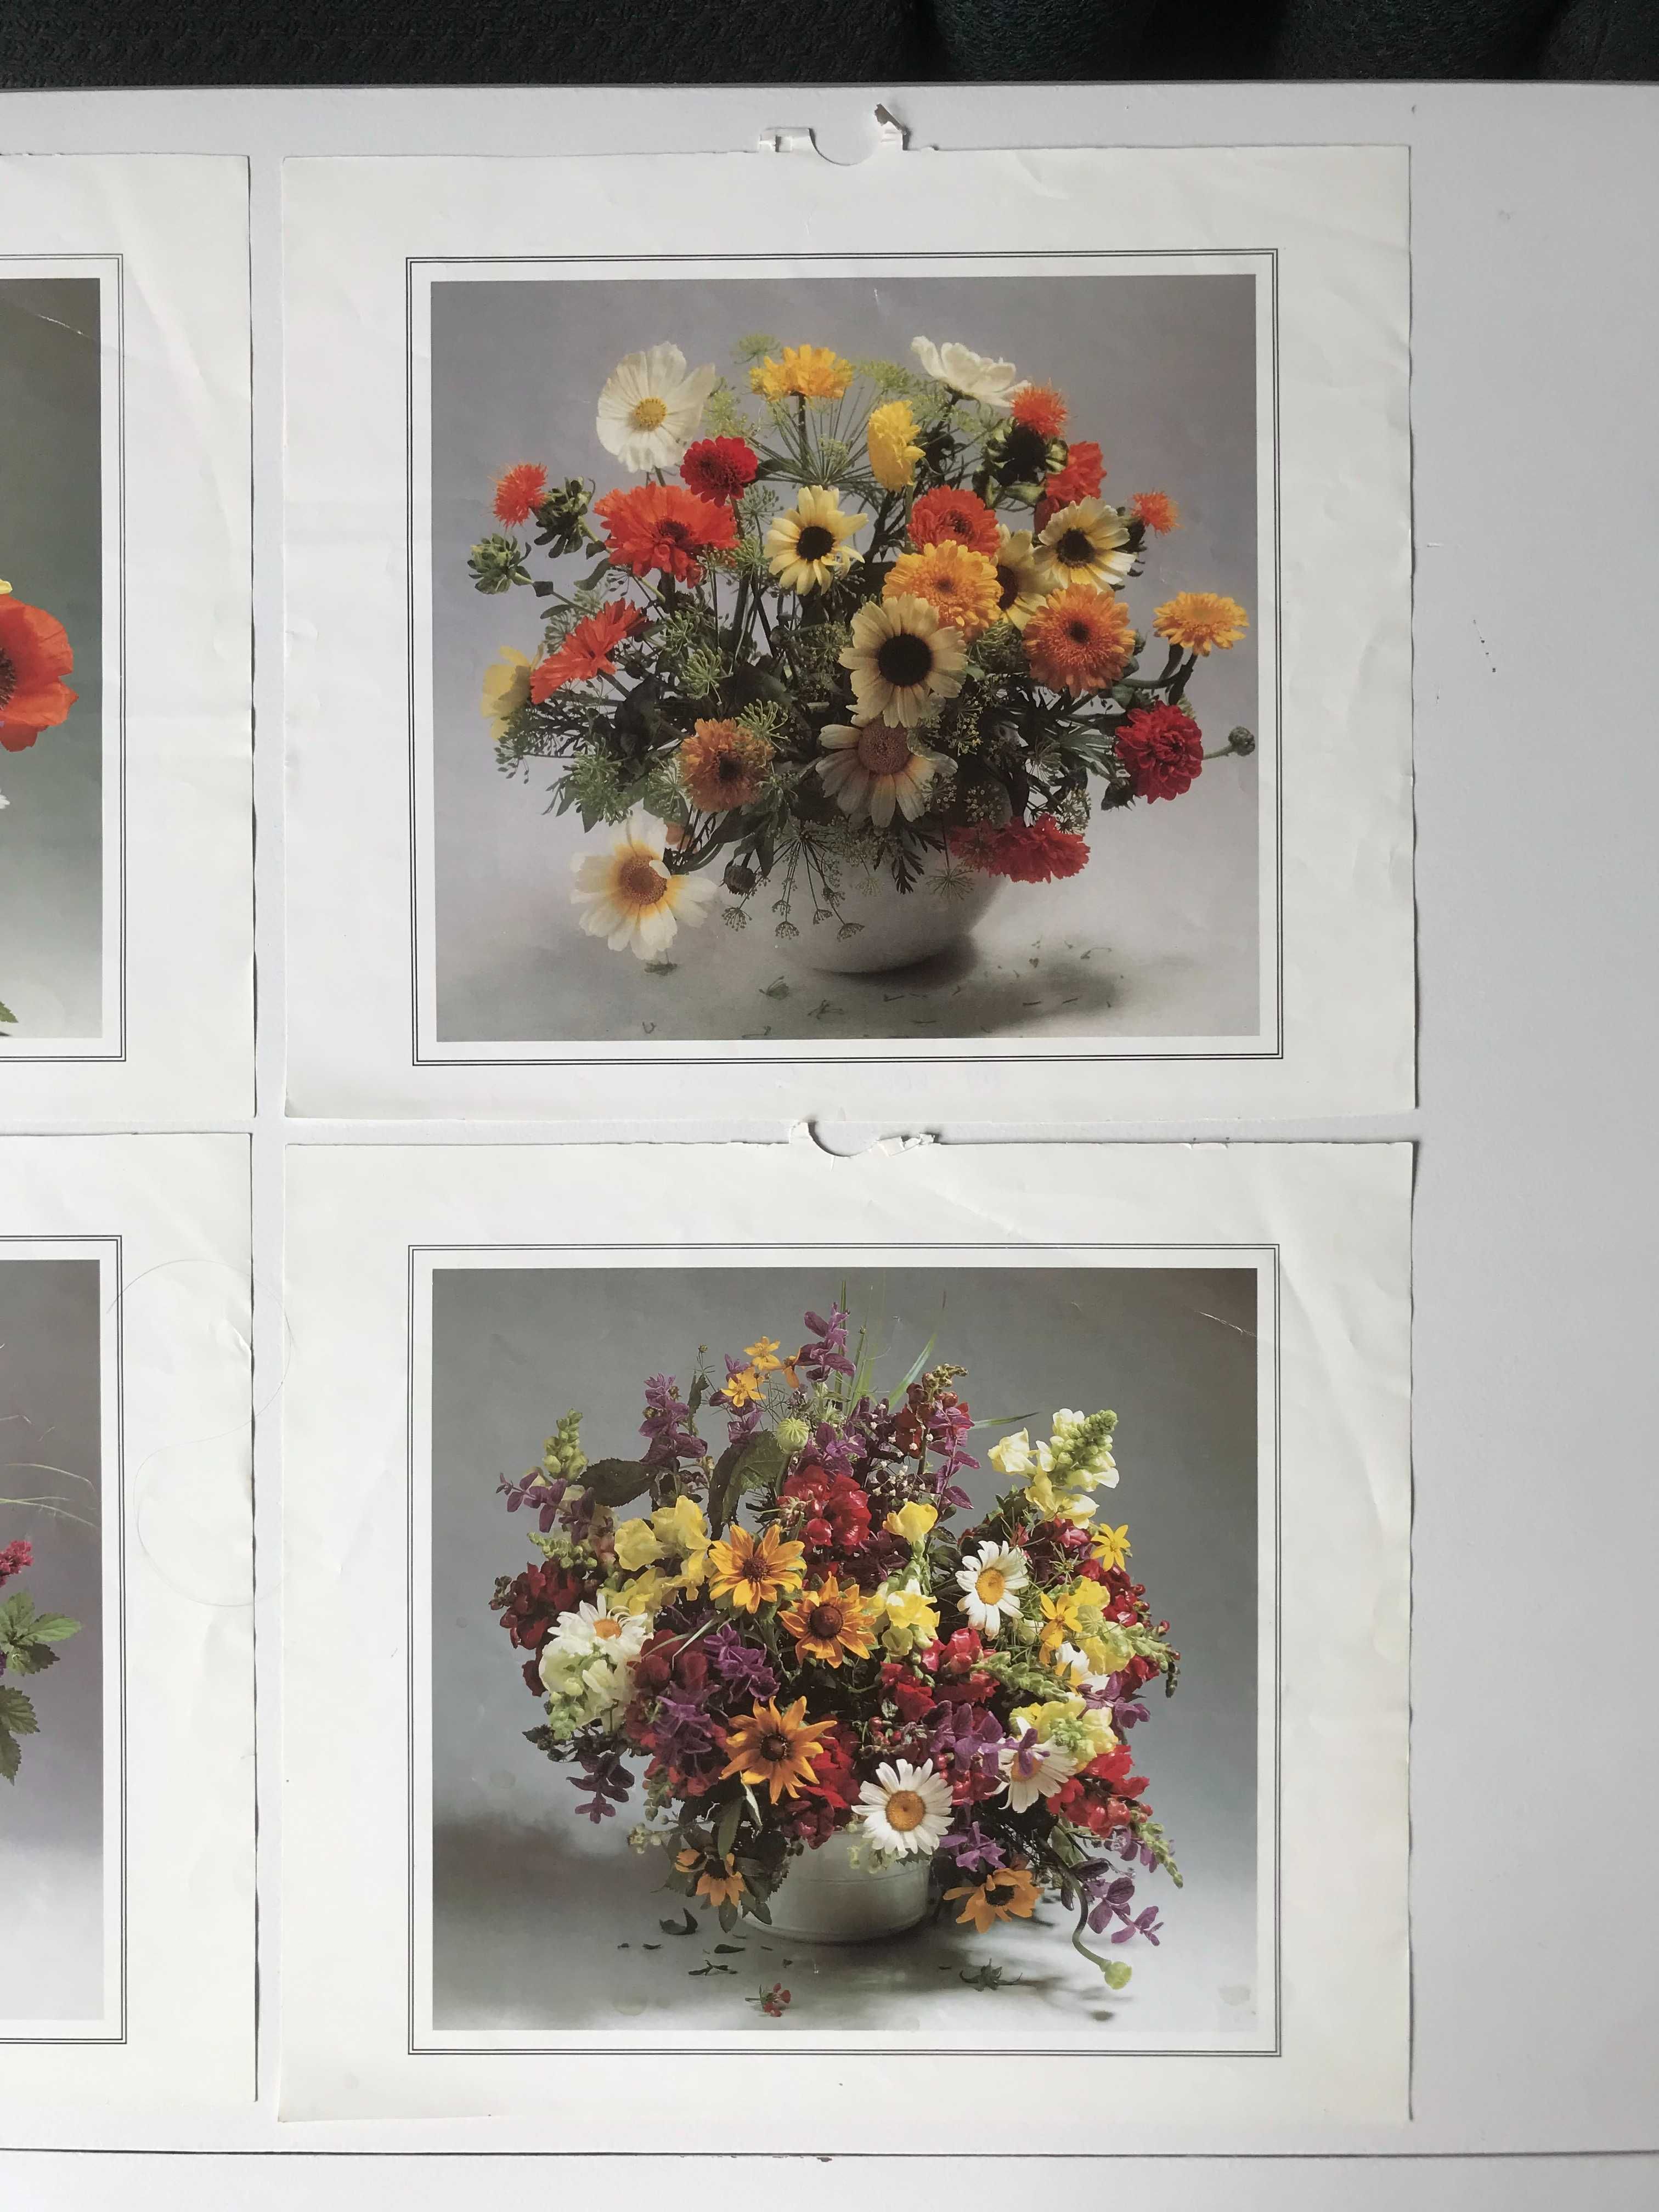 Vintage obrazy obrazki plakaty kwiaty kwiatki bukiet